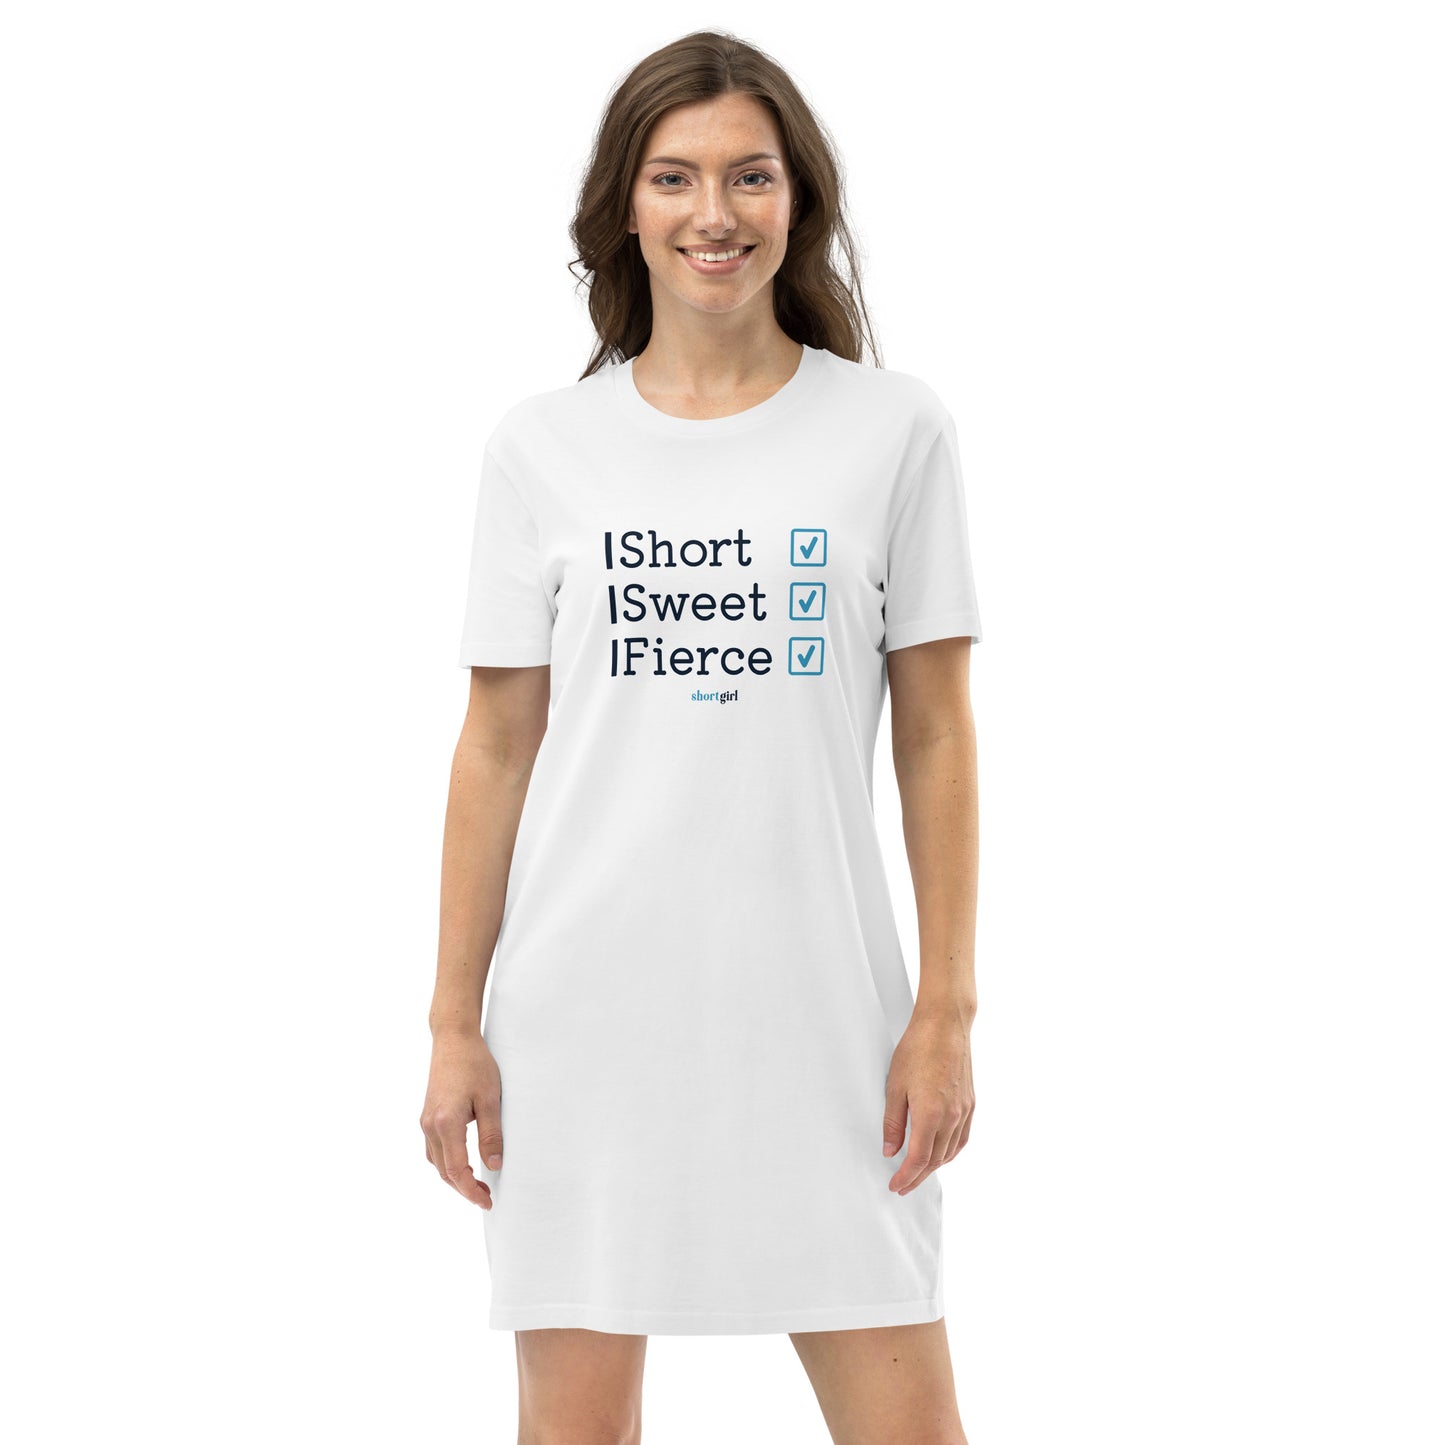 Organic cotton t-shirt dress - Short, Sweet, Fierce